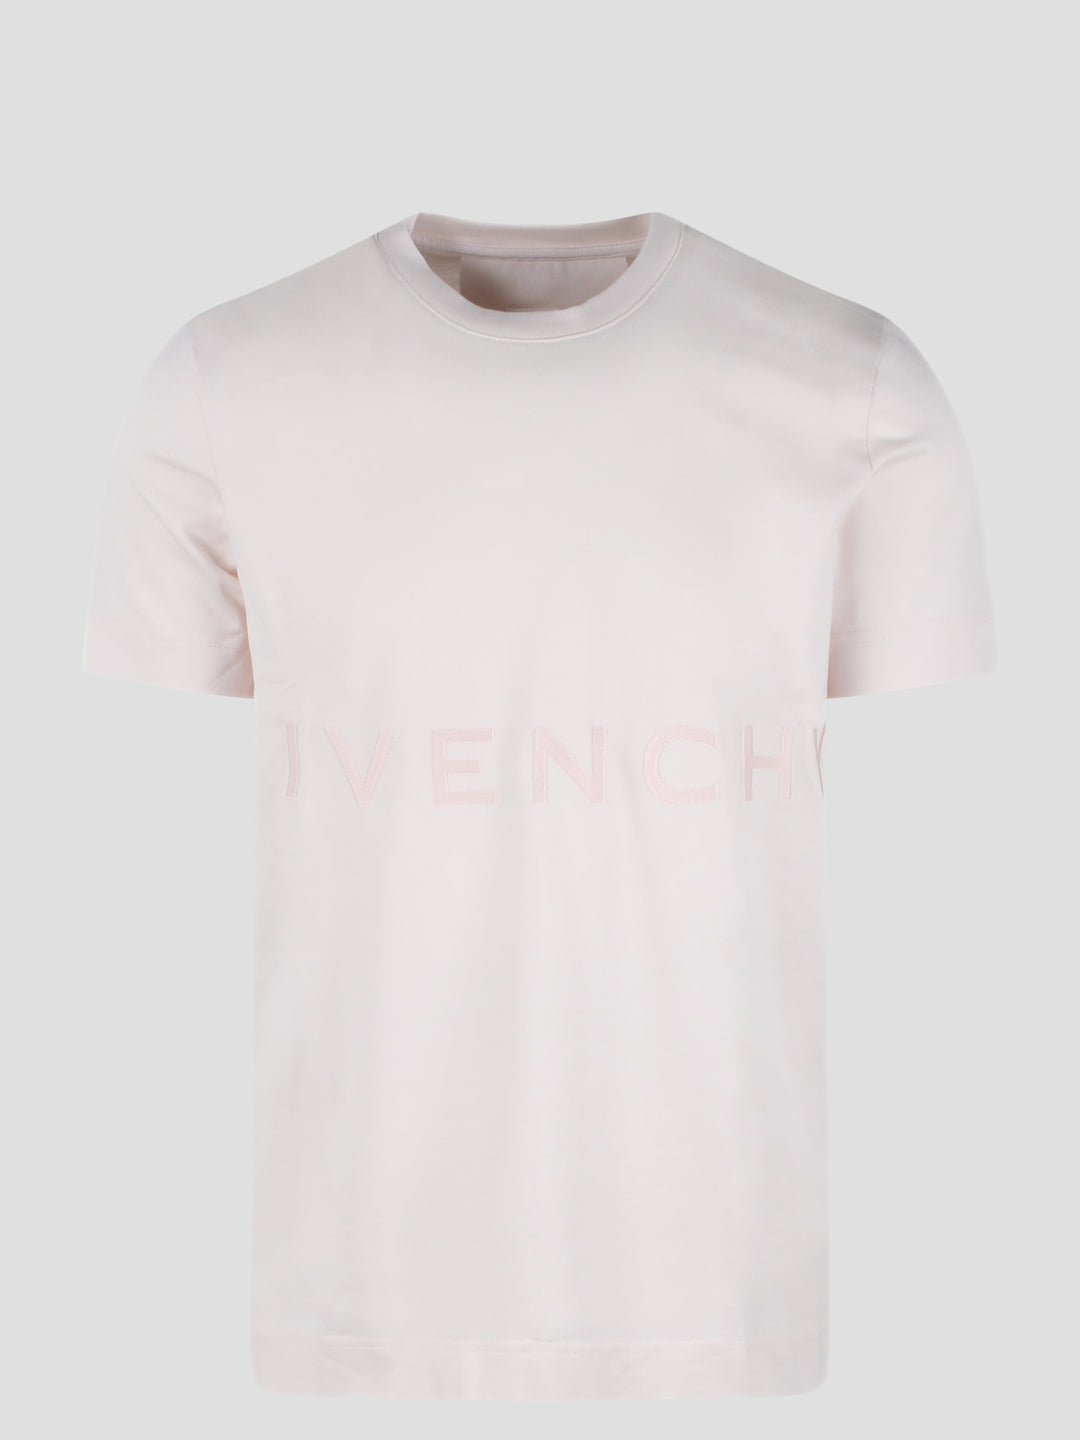 Givenchy 4g t-shirt